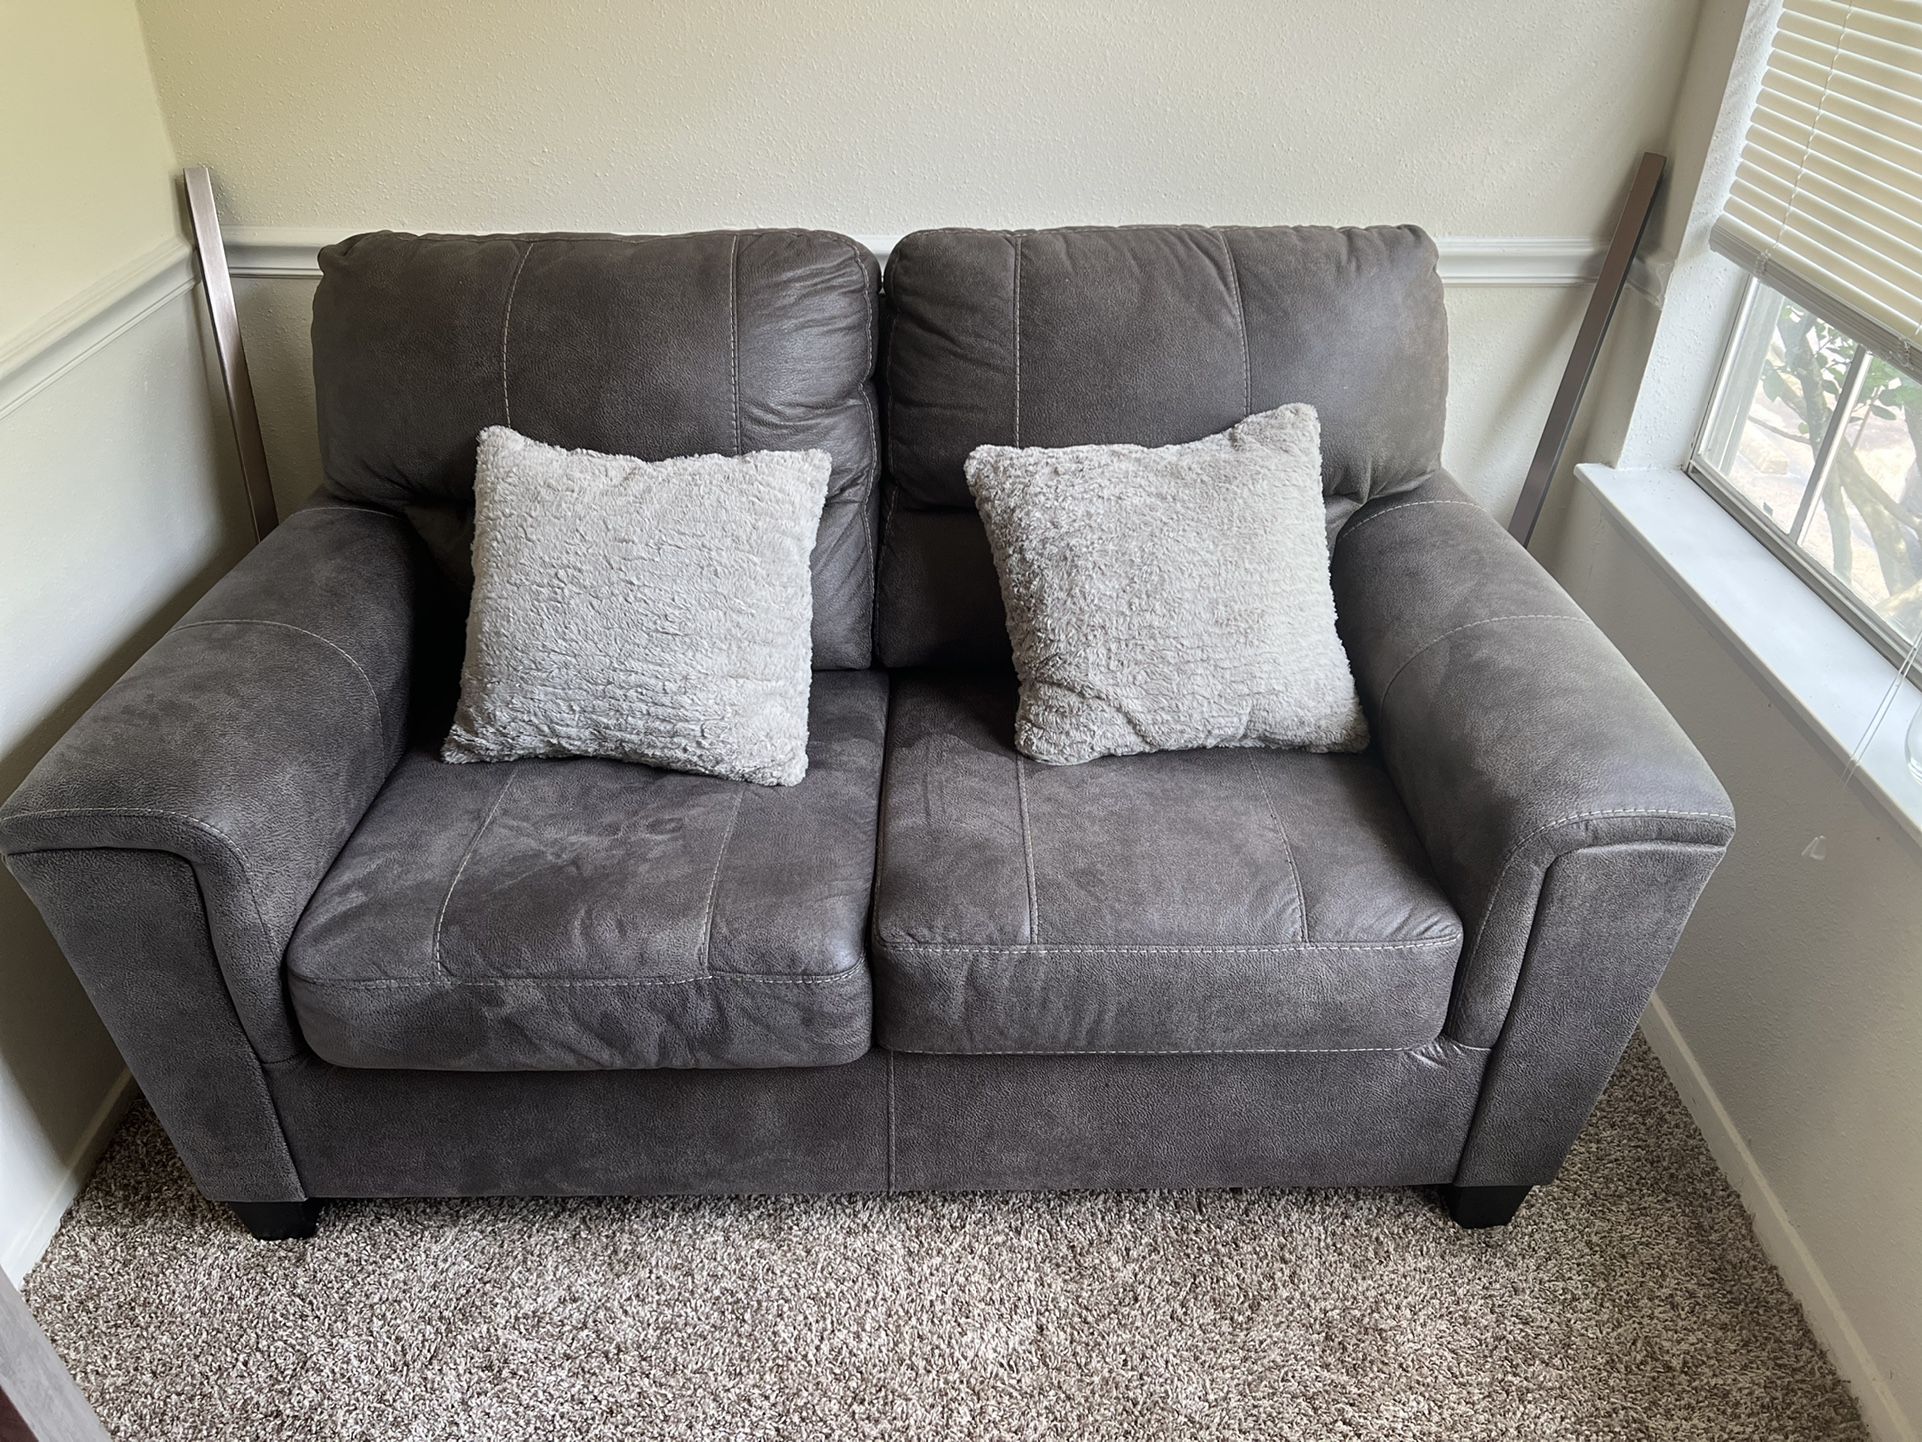 Two Piece Sofa Set. Gray. Like New. No Smoke, No Pet, No kid.